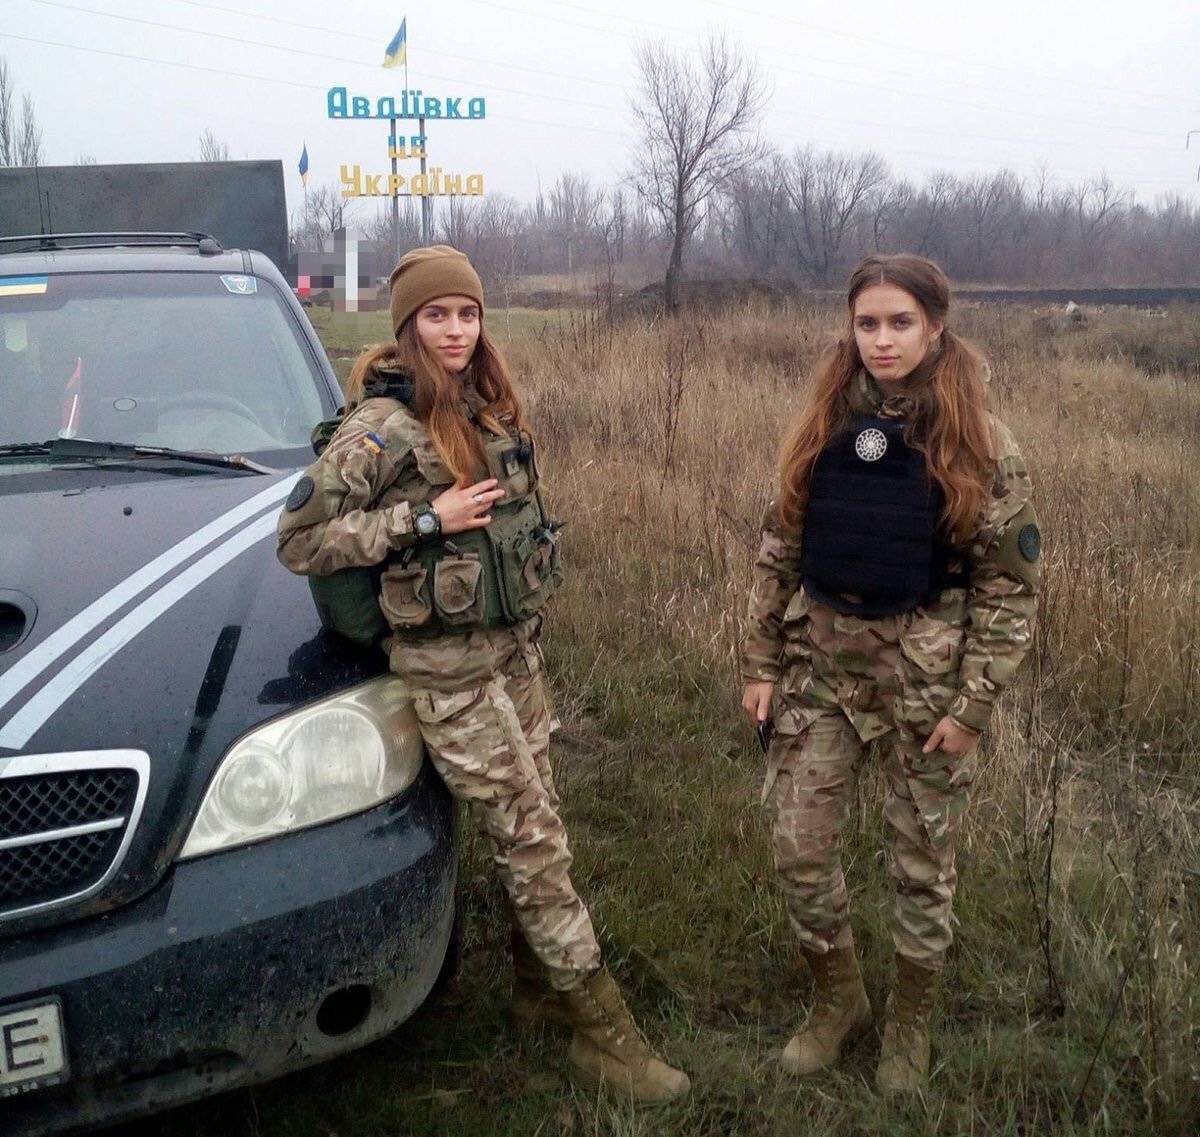 新闻出现佩戴纳粹标志的乌克兰女兵加拿大媒体很遗憾没认出来已删